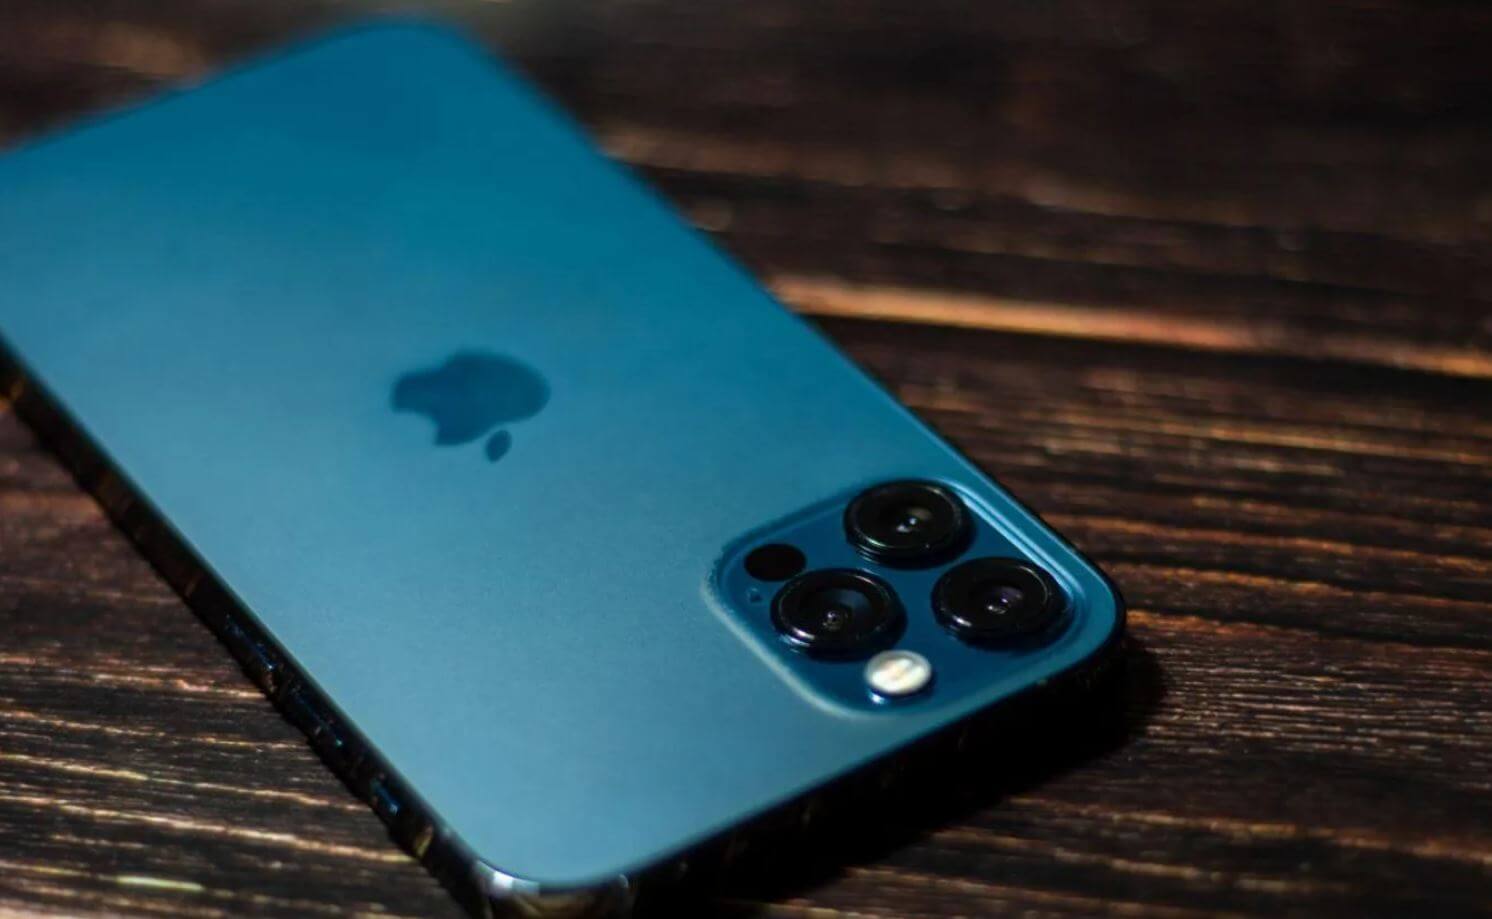 Цвет Айфона тихоокеанский. iPhone 12 Pro в первые дни продаж оказался в дефиците именно в этом цвете. Фото.